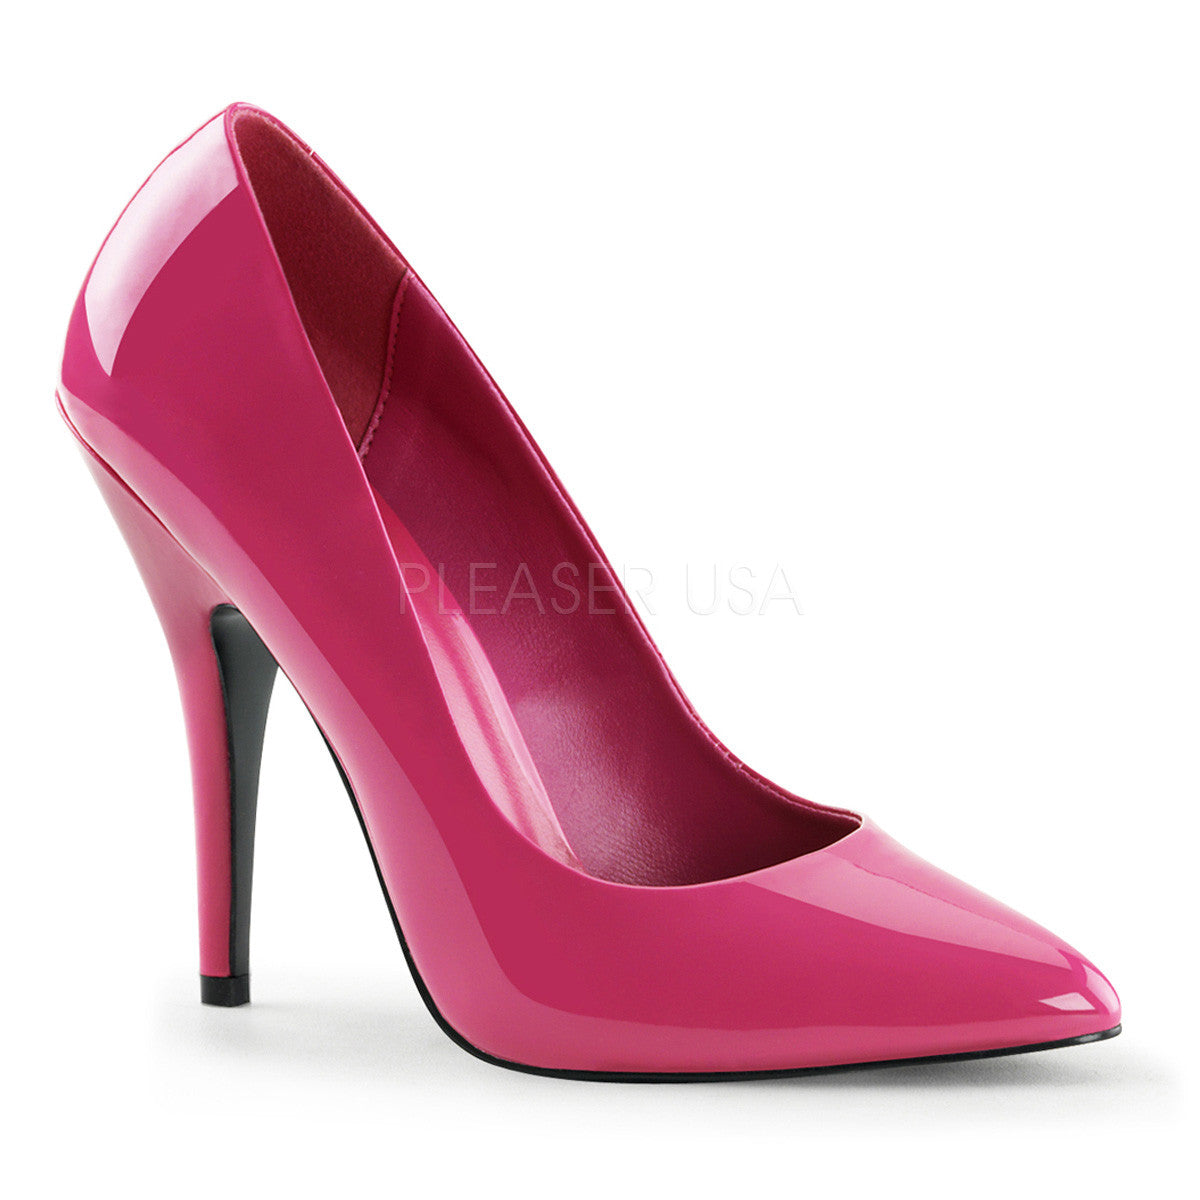 Pleaser SEDUCE-420 Hot Pink Patent Classic Pumps - Shoecup.com